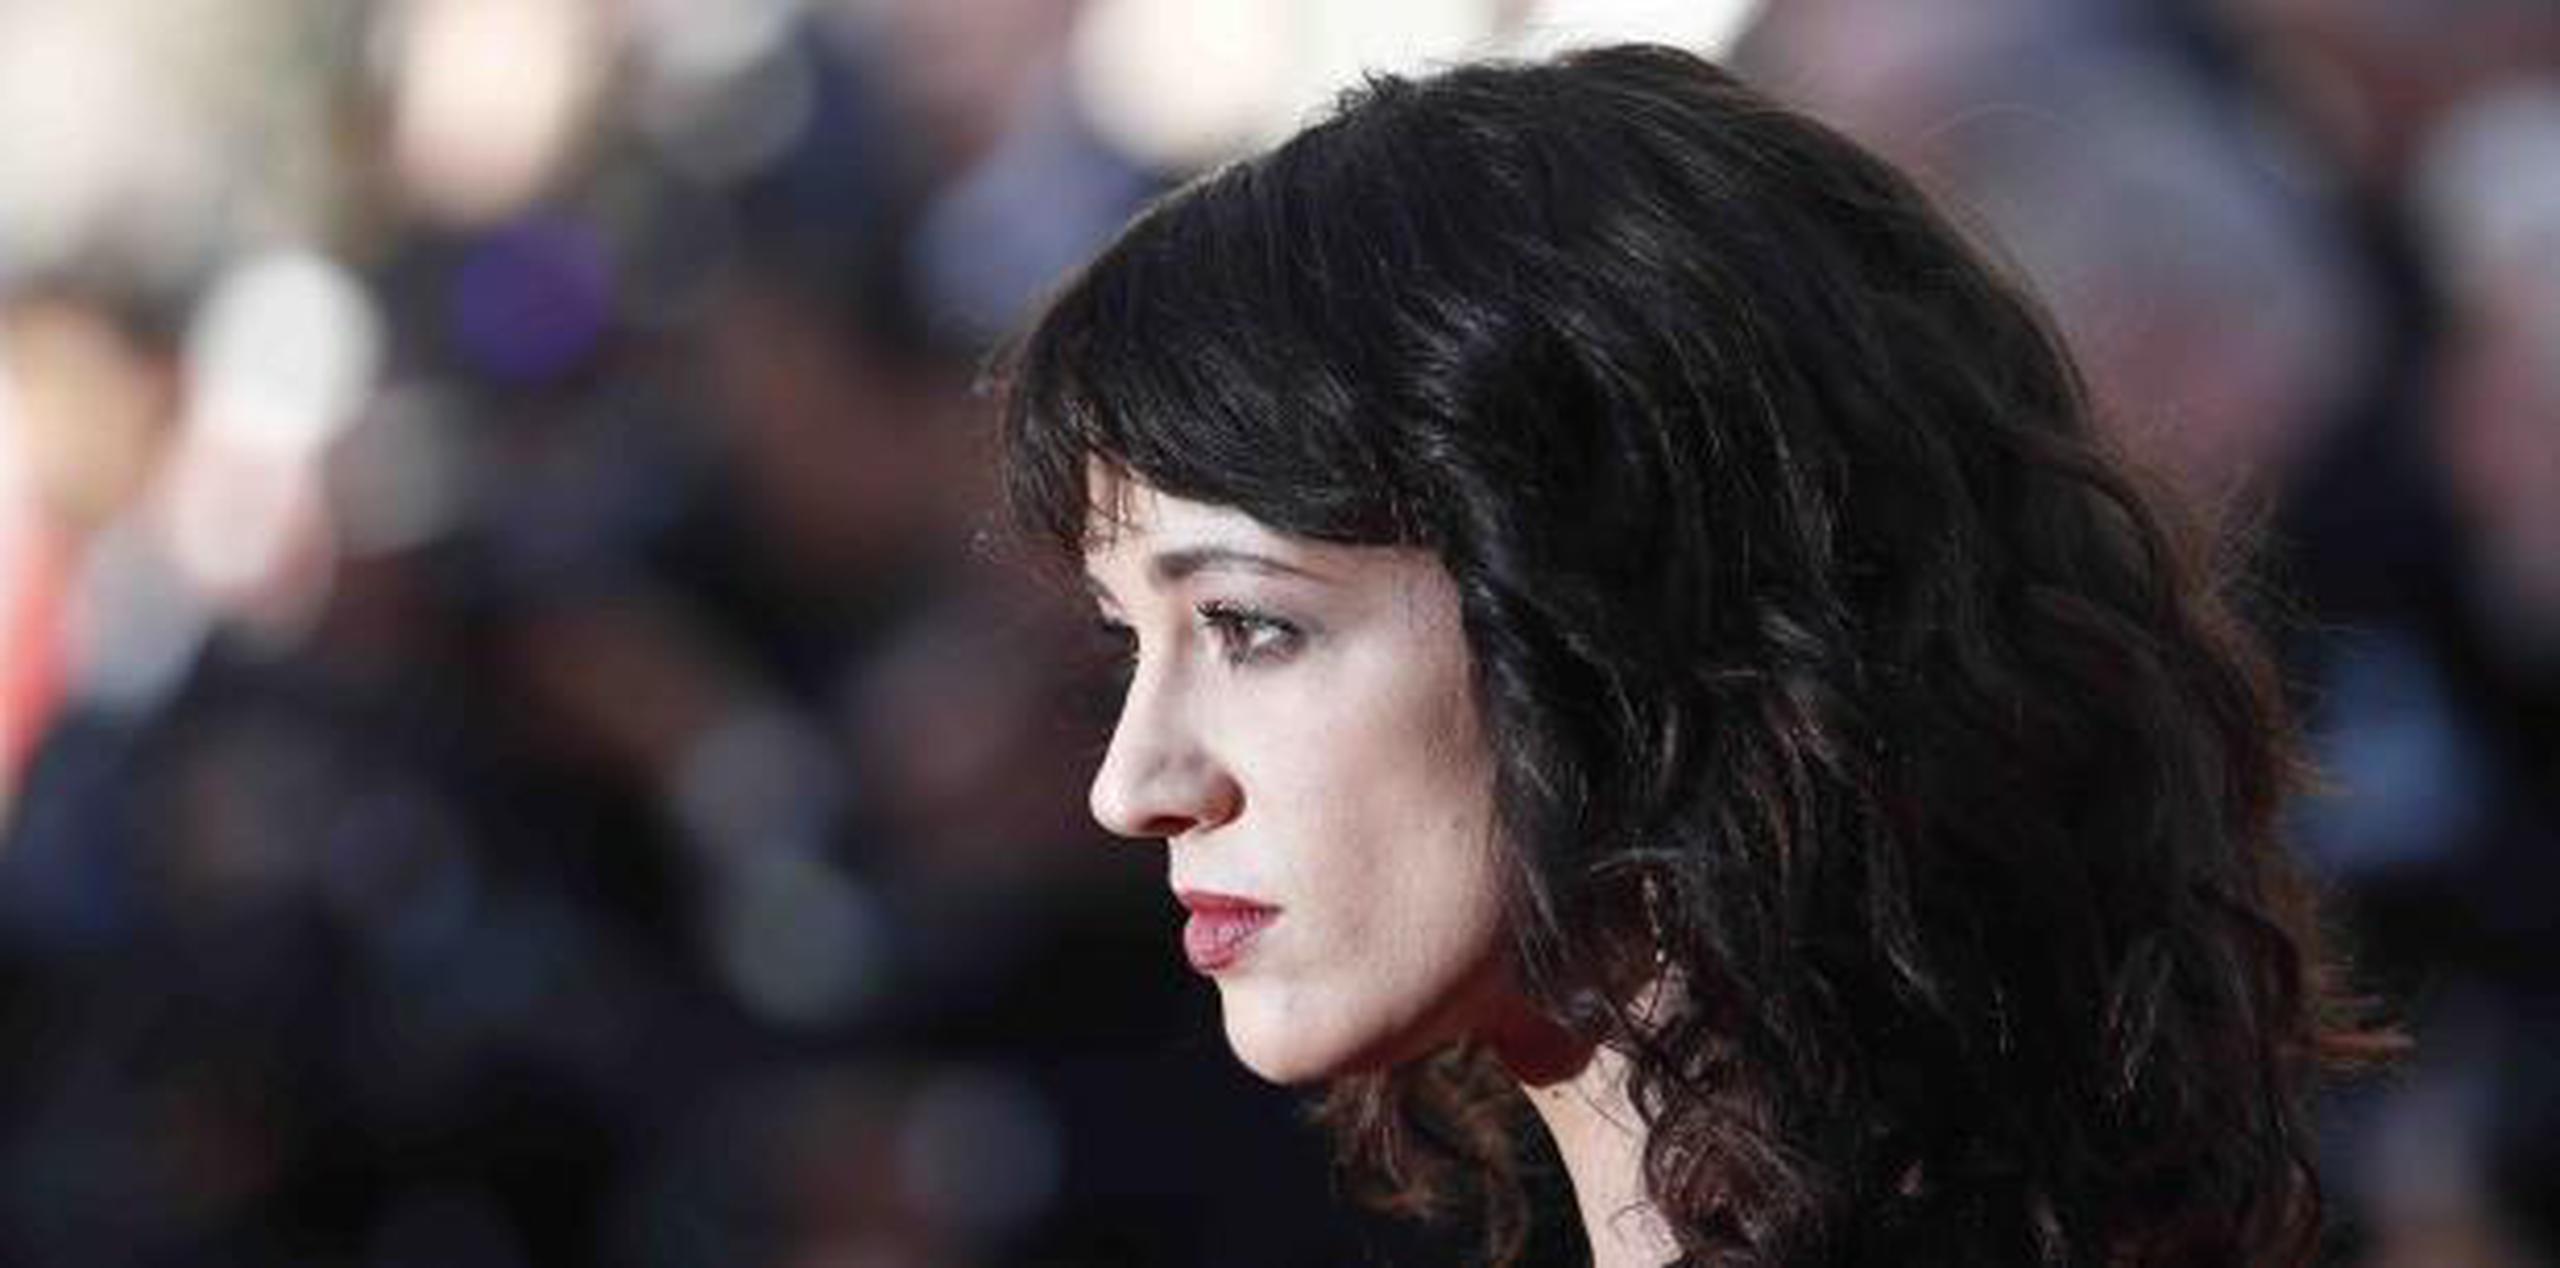 La actriz italiana Asia Argento fue demandada por un joven de 17 años, por lo que no tenía edad legal para consentir a tener relaciones sexuales. (AP)